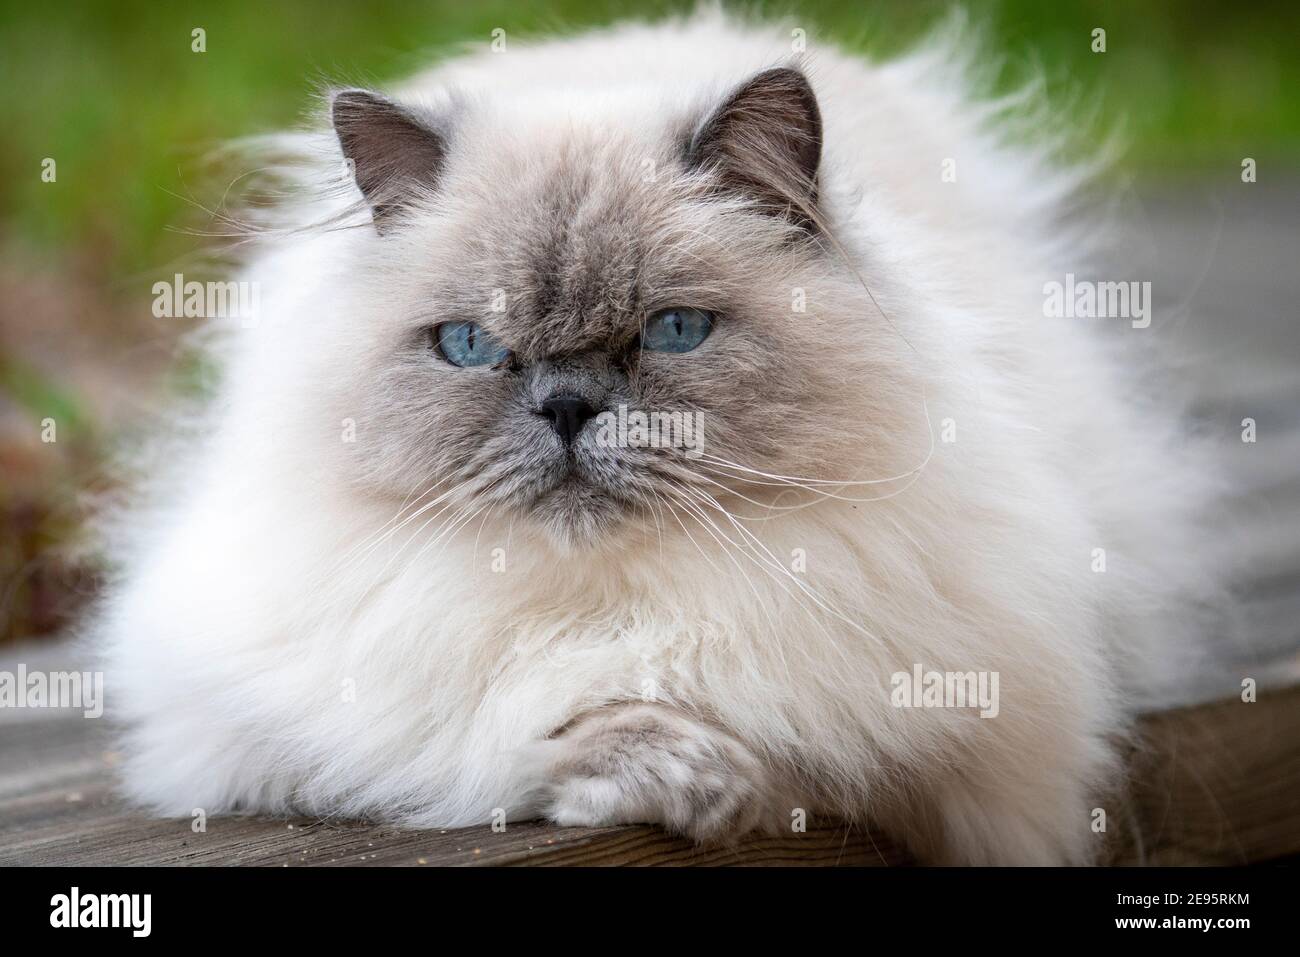 Schöne Erwachsene Ragdoll Katze mit neugierigen blauen Augen und flauschigen weißen Fell Blick auf die Kamera mit geneigtem Kopf. Stockfoto